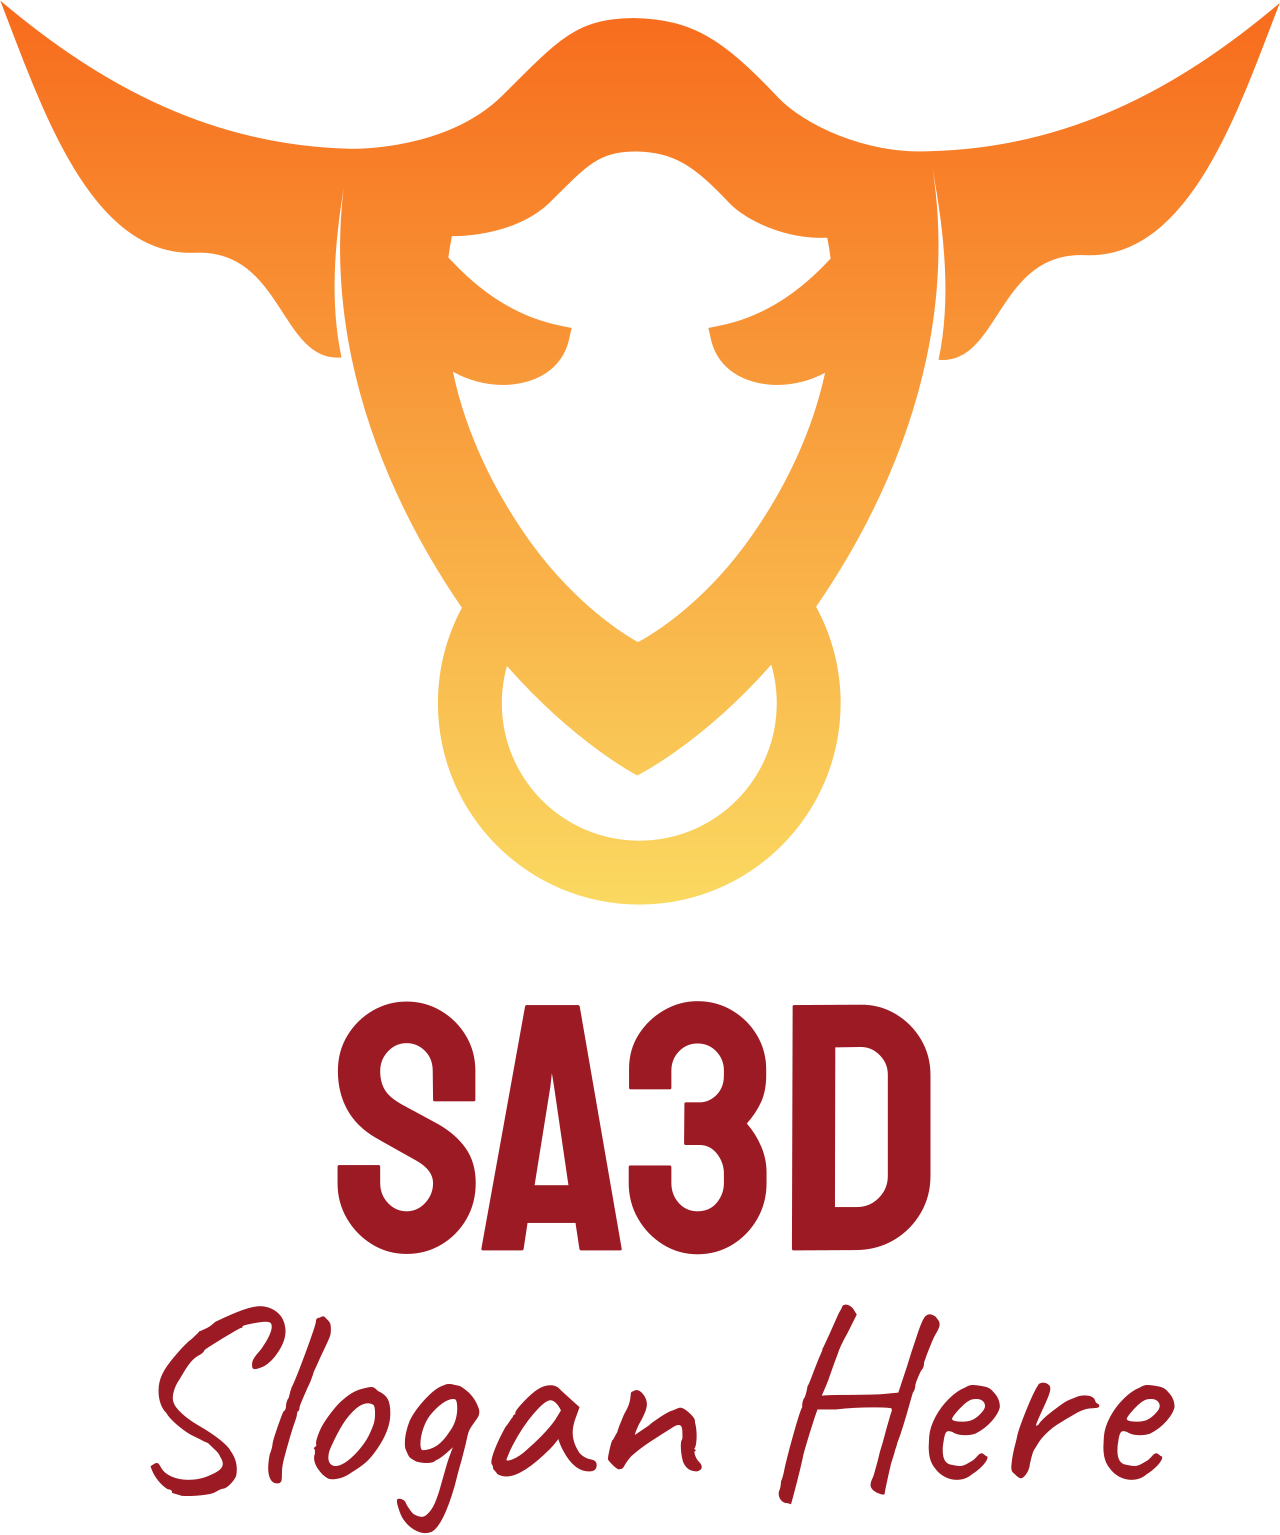 Sa3d's logo